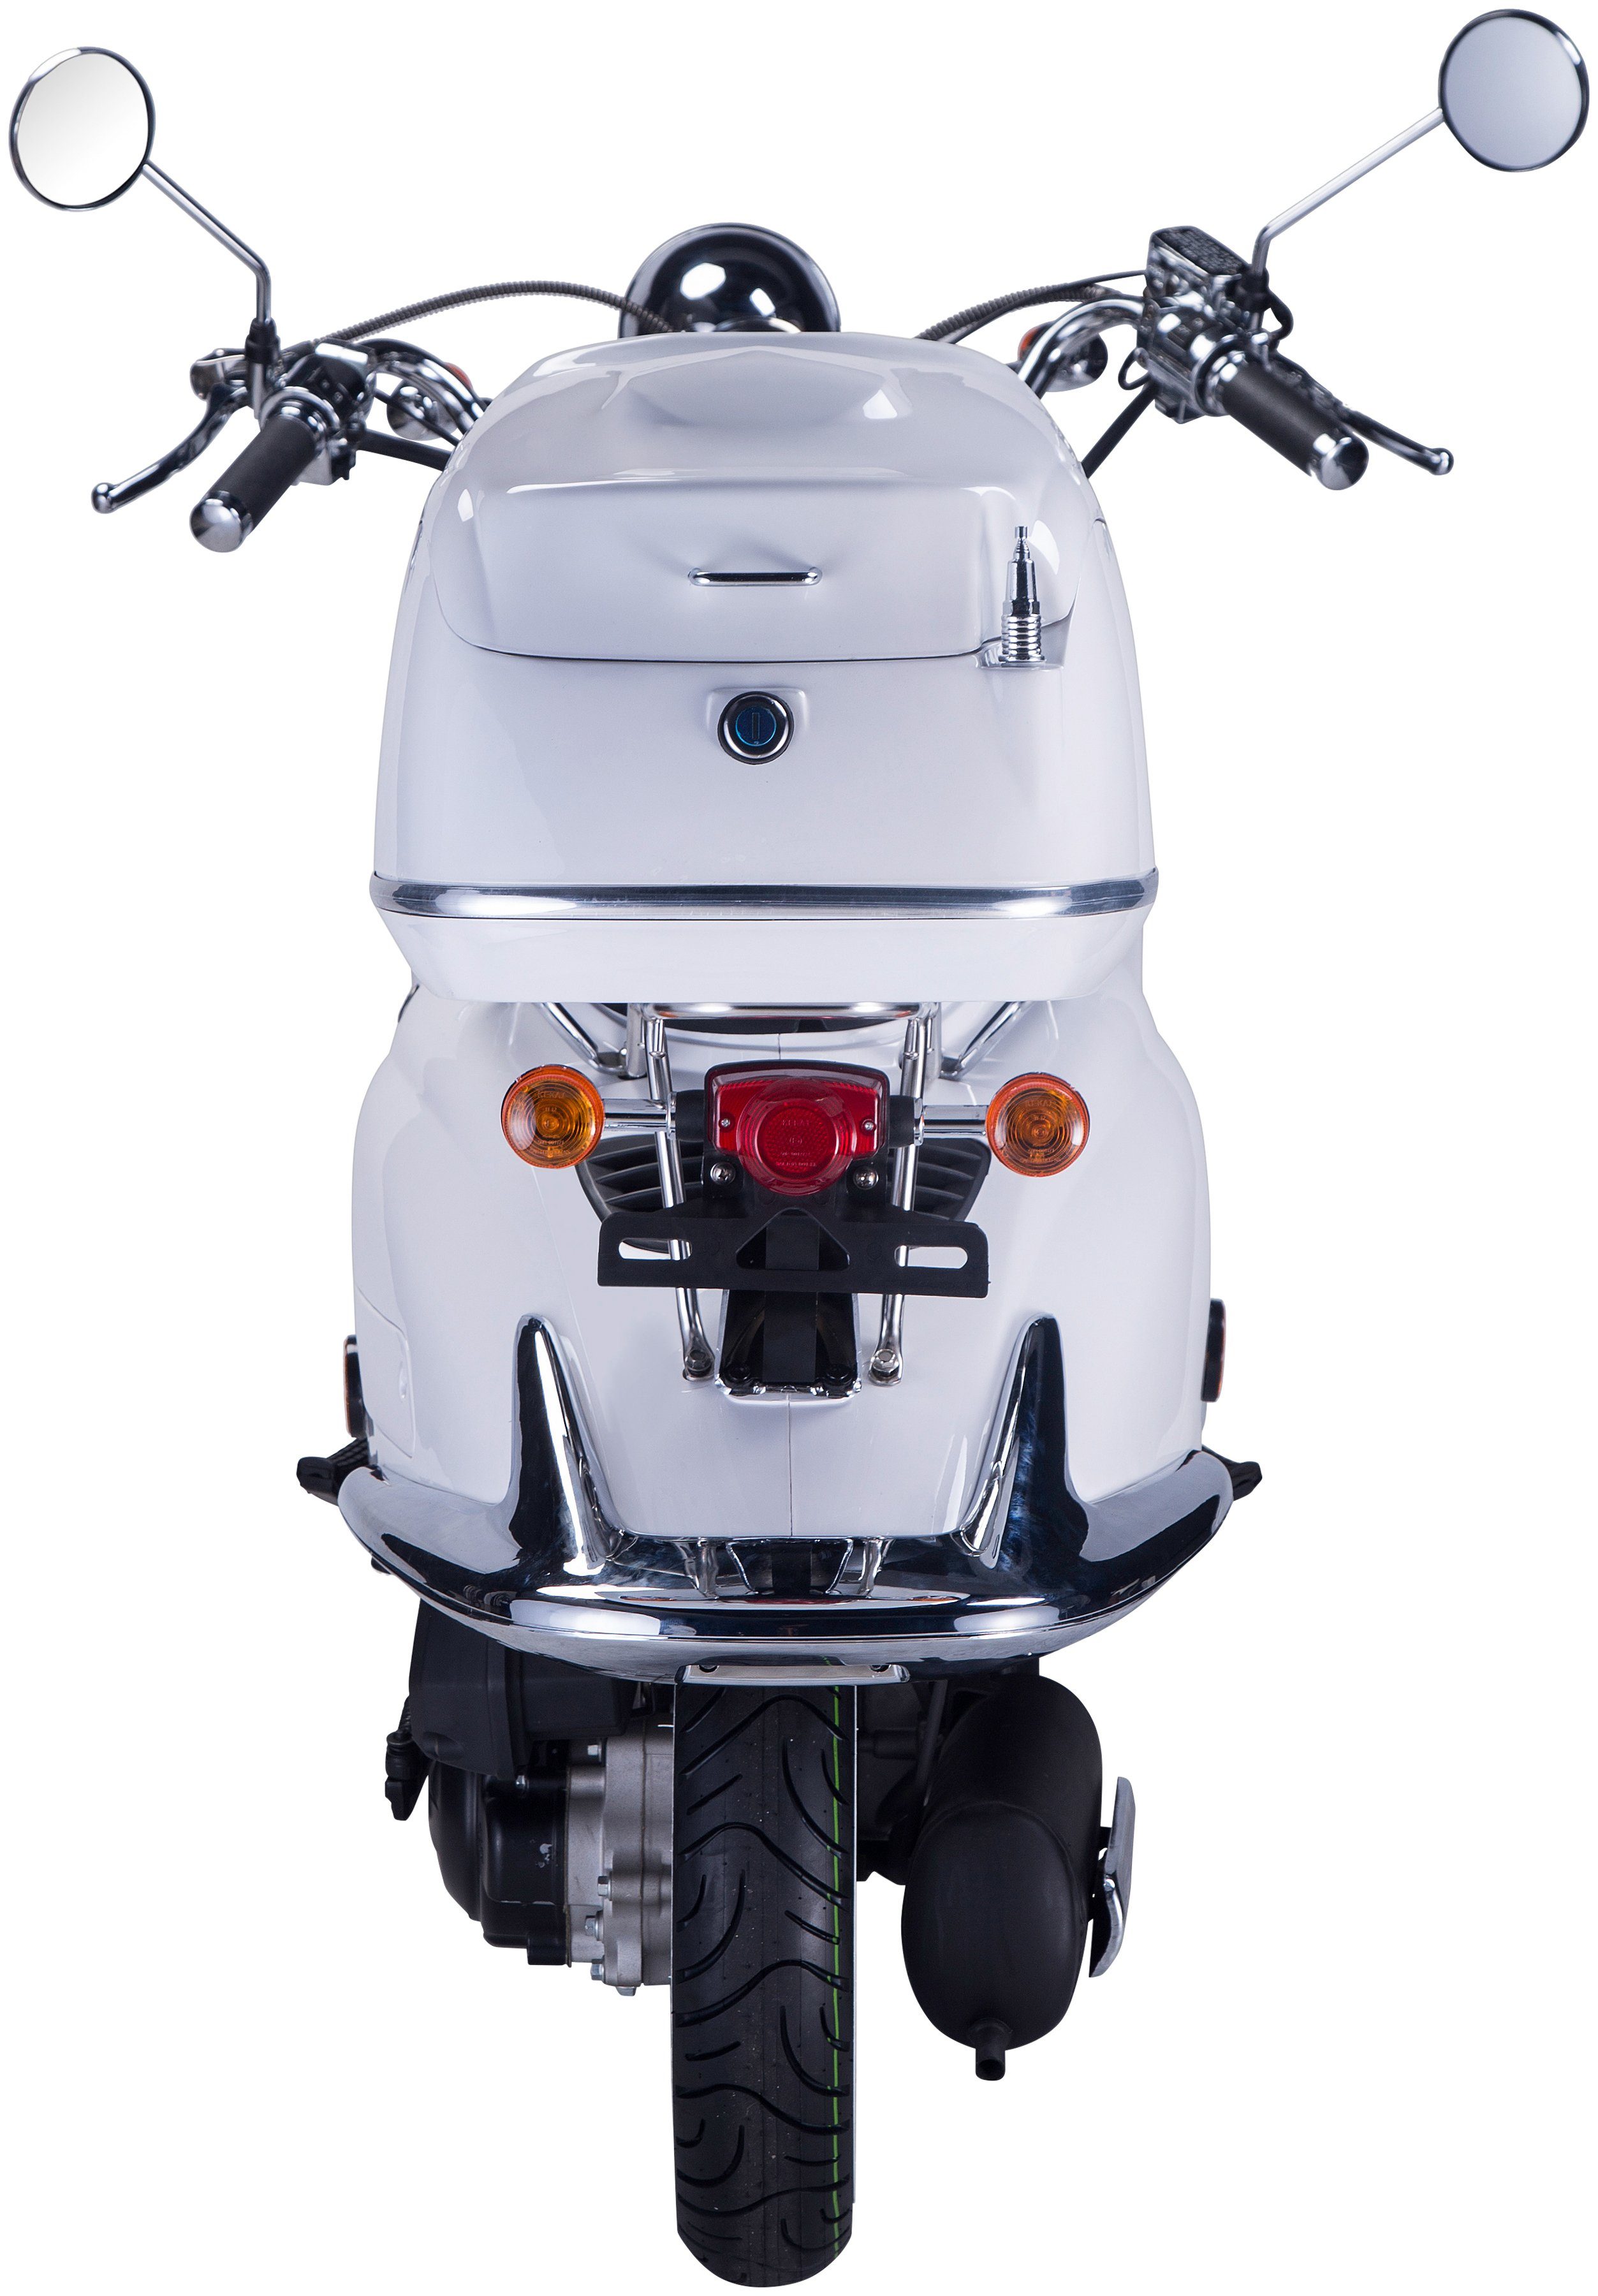 GT UNION Motorroller Strada, 50 km/h, 45 (Set), Euro mit Topcase 5, weiß ccm